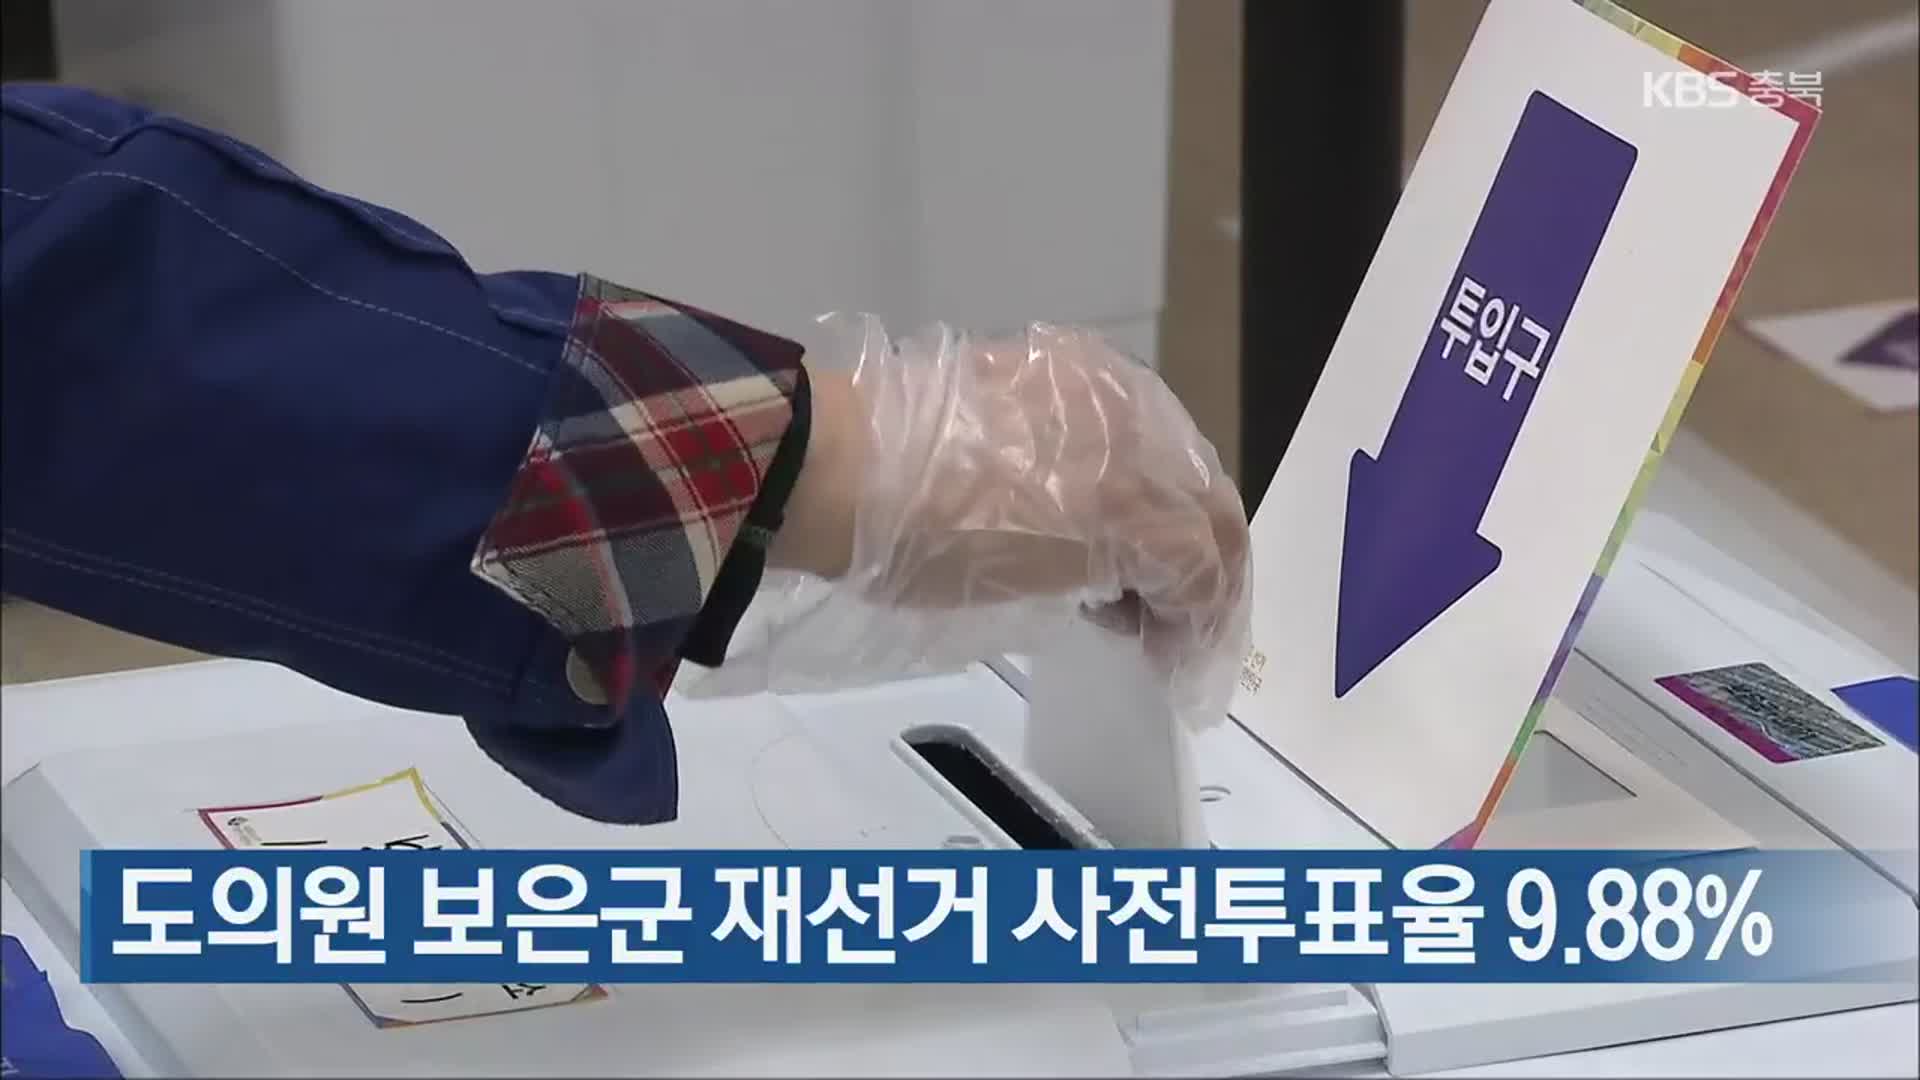 도의원 보은군 재선거 사전투표율 9.88%